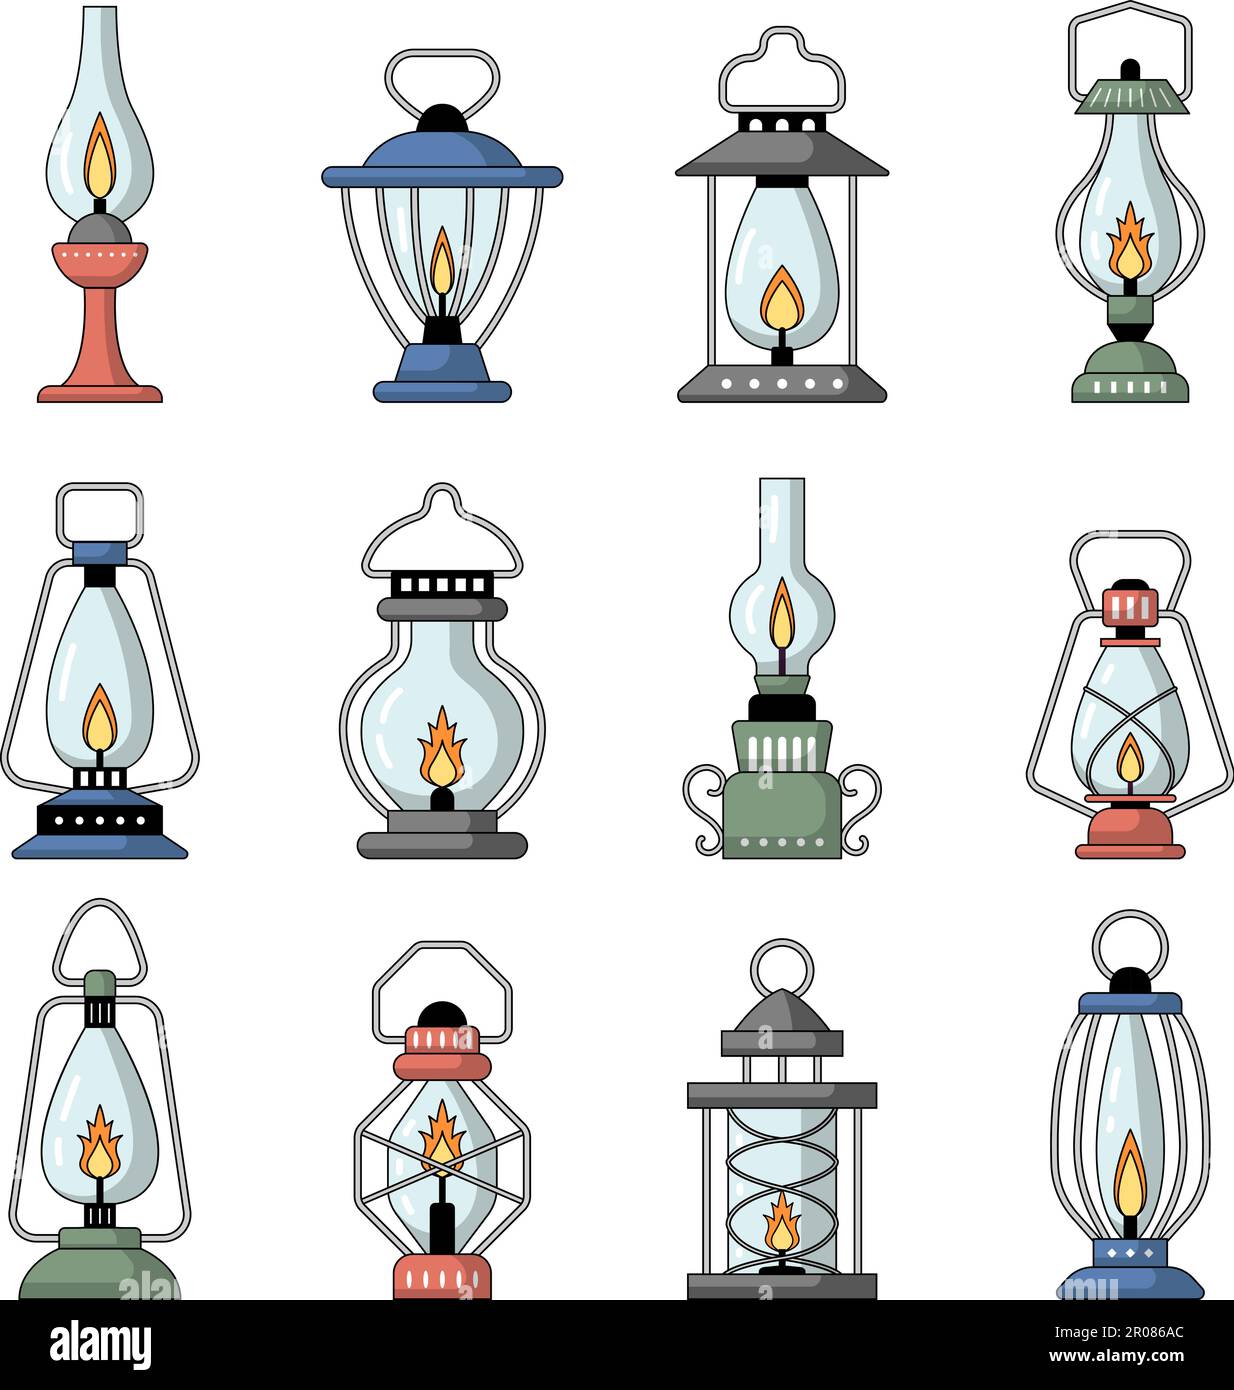 Lanterne vintage. Silhouettes di lampade a gas recenti vettoriali retrò apparecchiature notturne Illustrazione Vettoriale